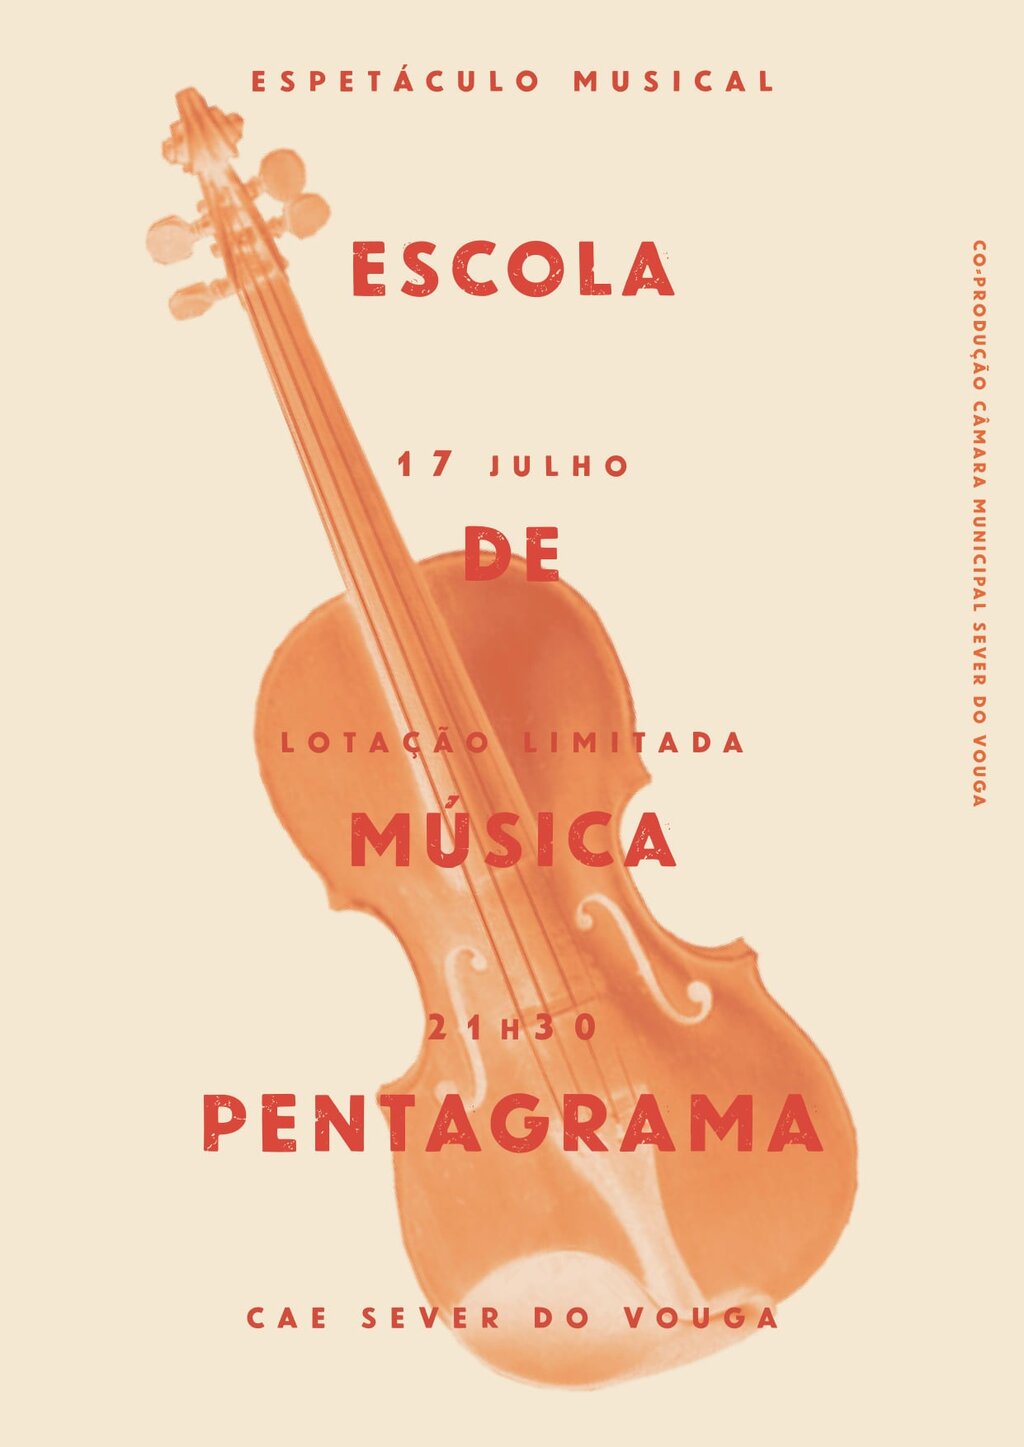 17 Julho - Espetáculo Musical - Escola Pentagrama